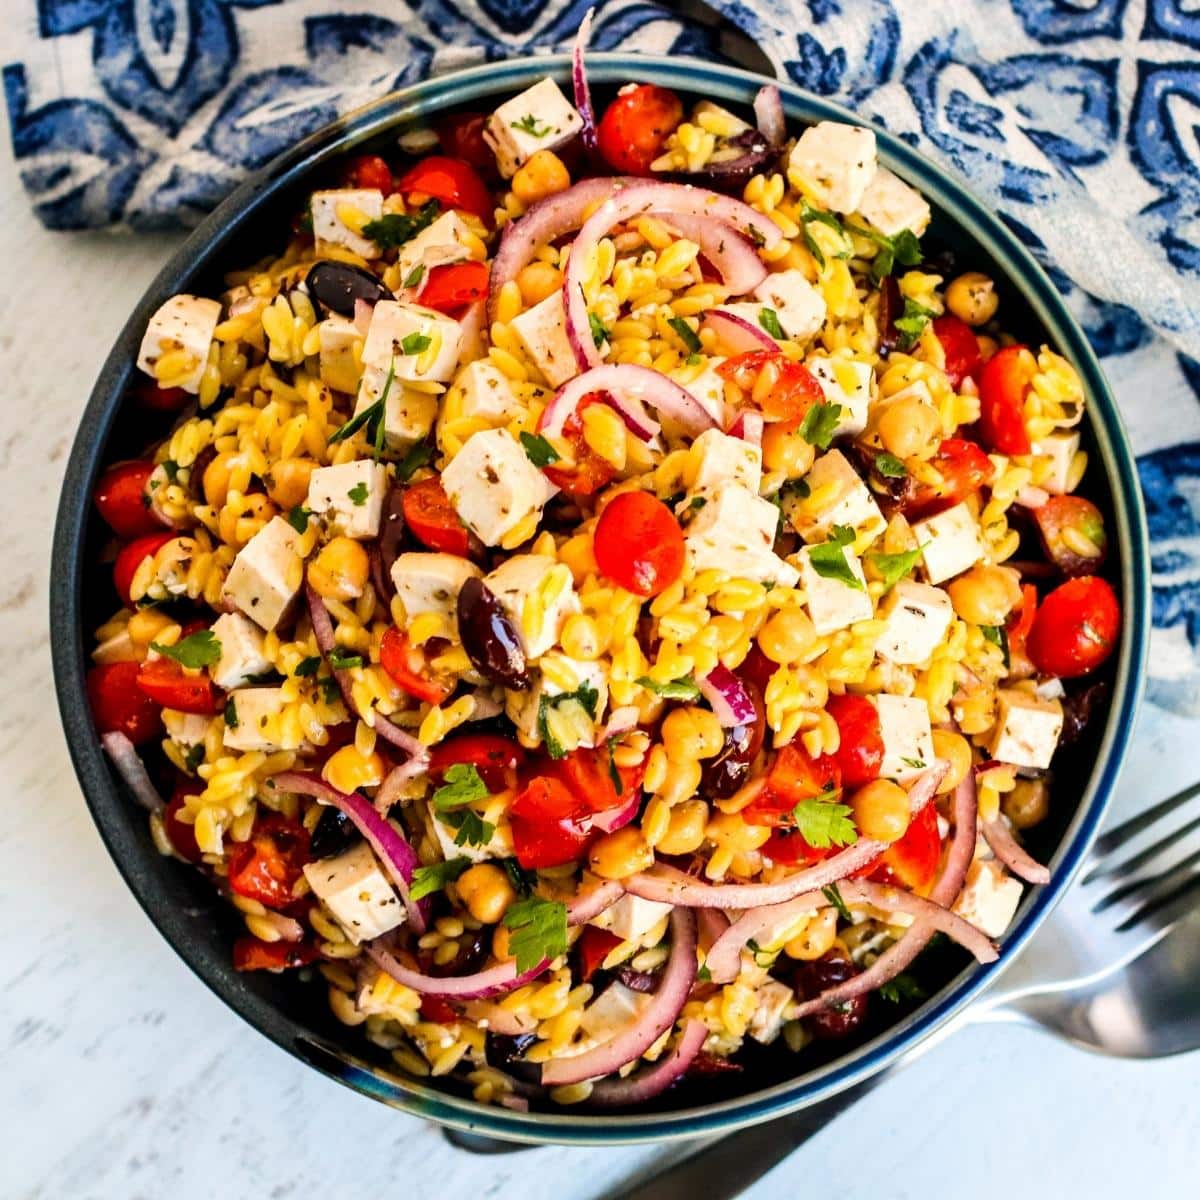 Bowl of Mediterranean Vegan Orzo Salad next to blue and white napkin.